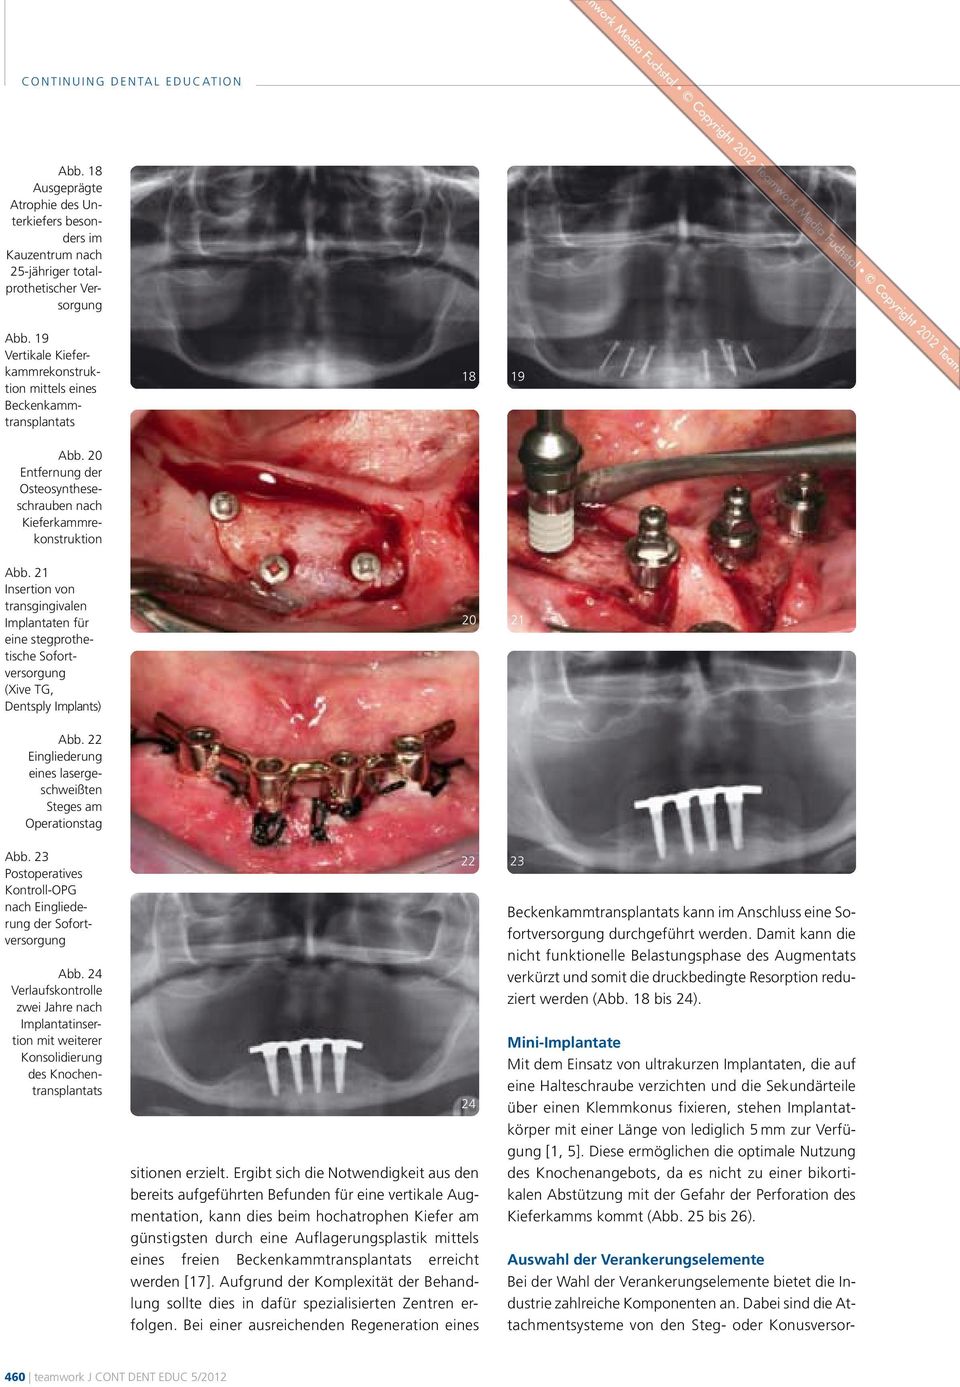 21 Insertion von transgingivalen Implantaten für eine stegprothe - tische Sofort - versorgung (Xive TG, Dentsply Implants) 20 21 Abb.